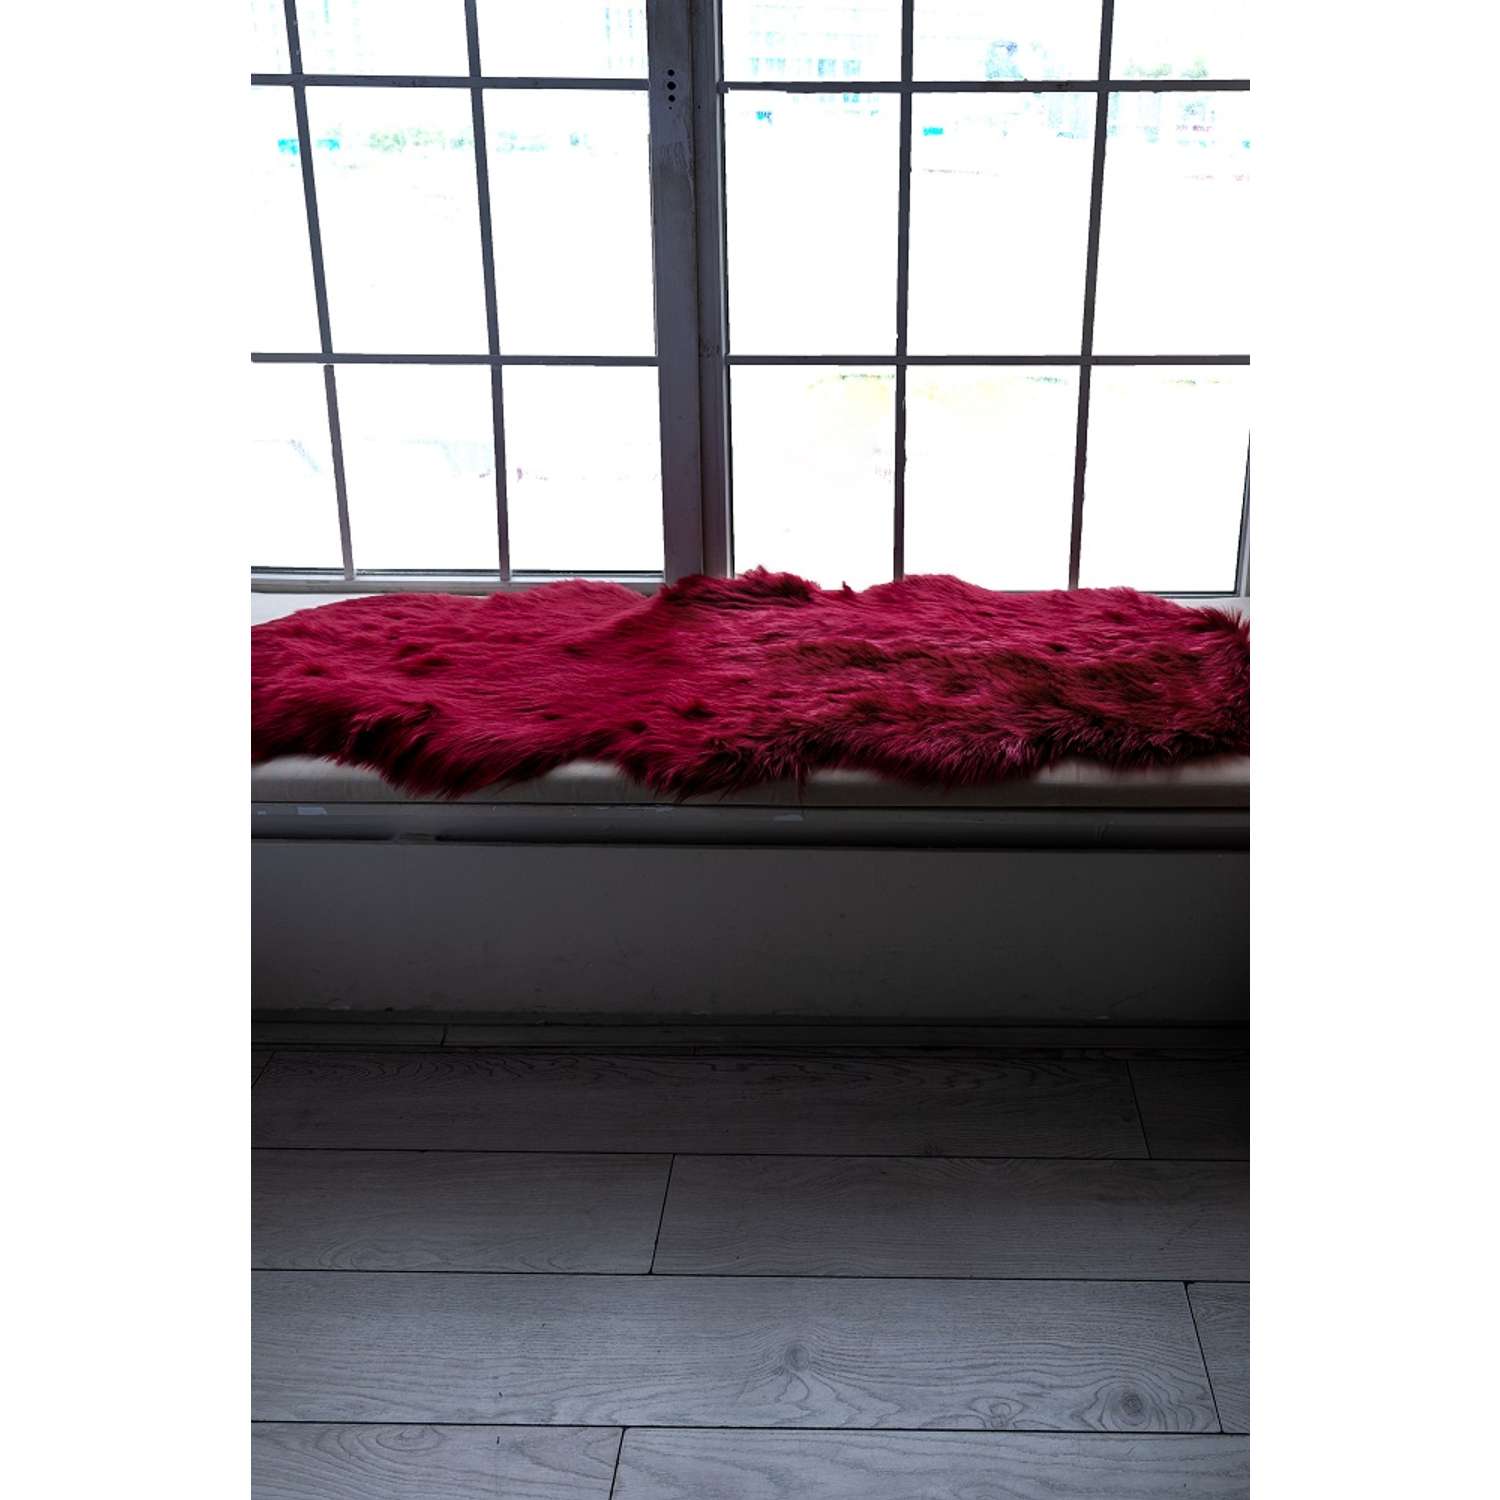 Коврик прикроватный Strawberry dreams 60х180 см бордовый - фото 1